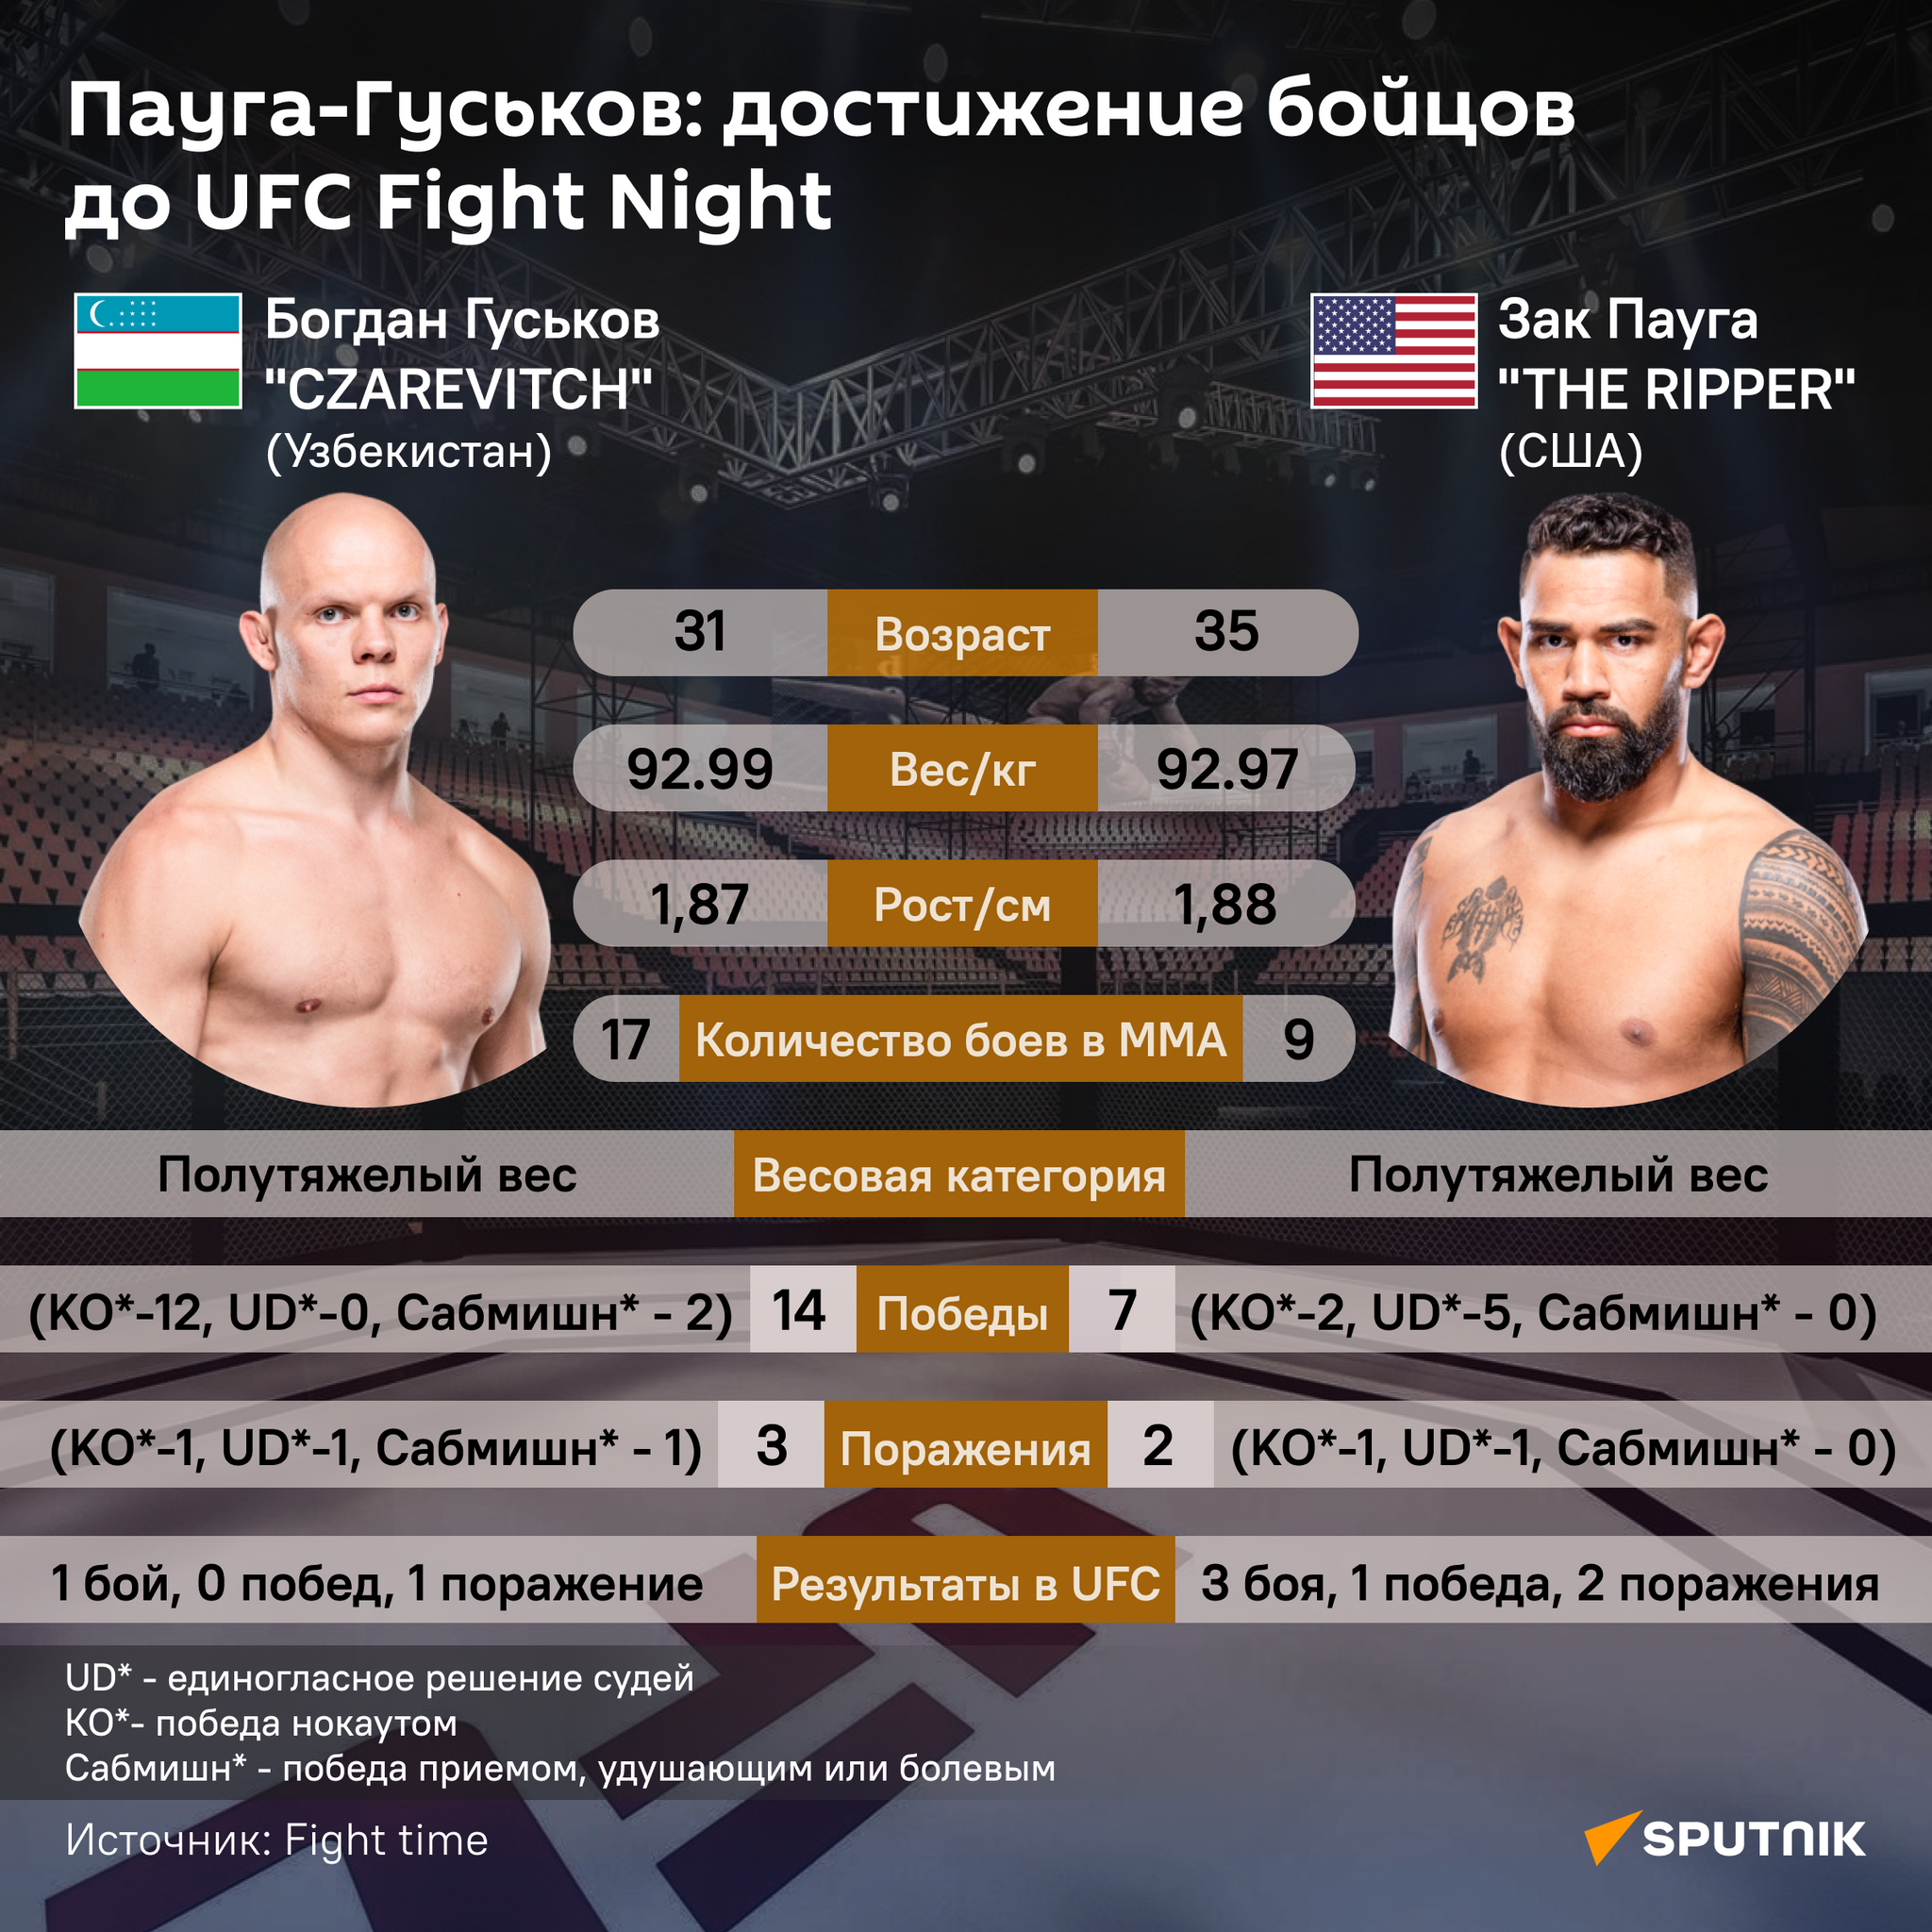 Пауга-Гуськов: достижения бойцов до UFC Fight Night - Sputnik Узбекистан